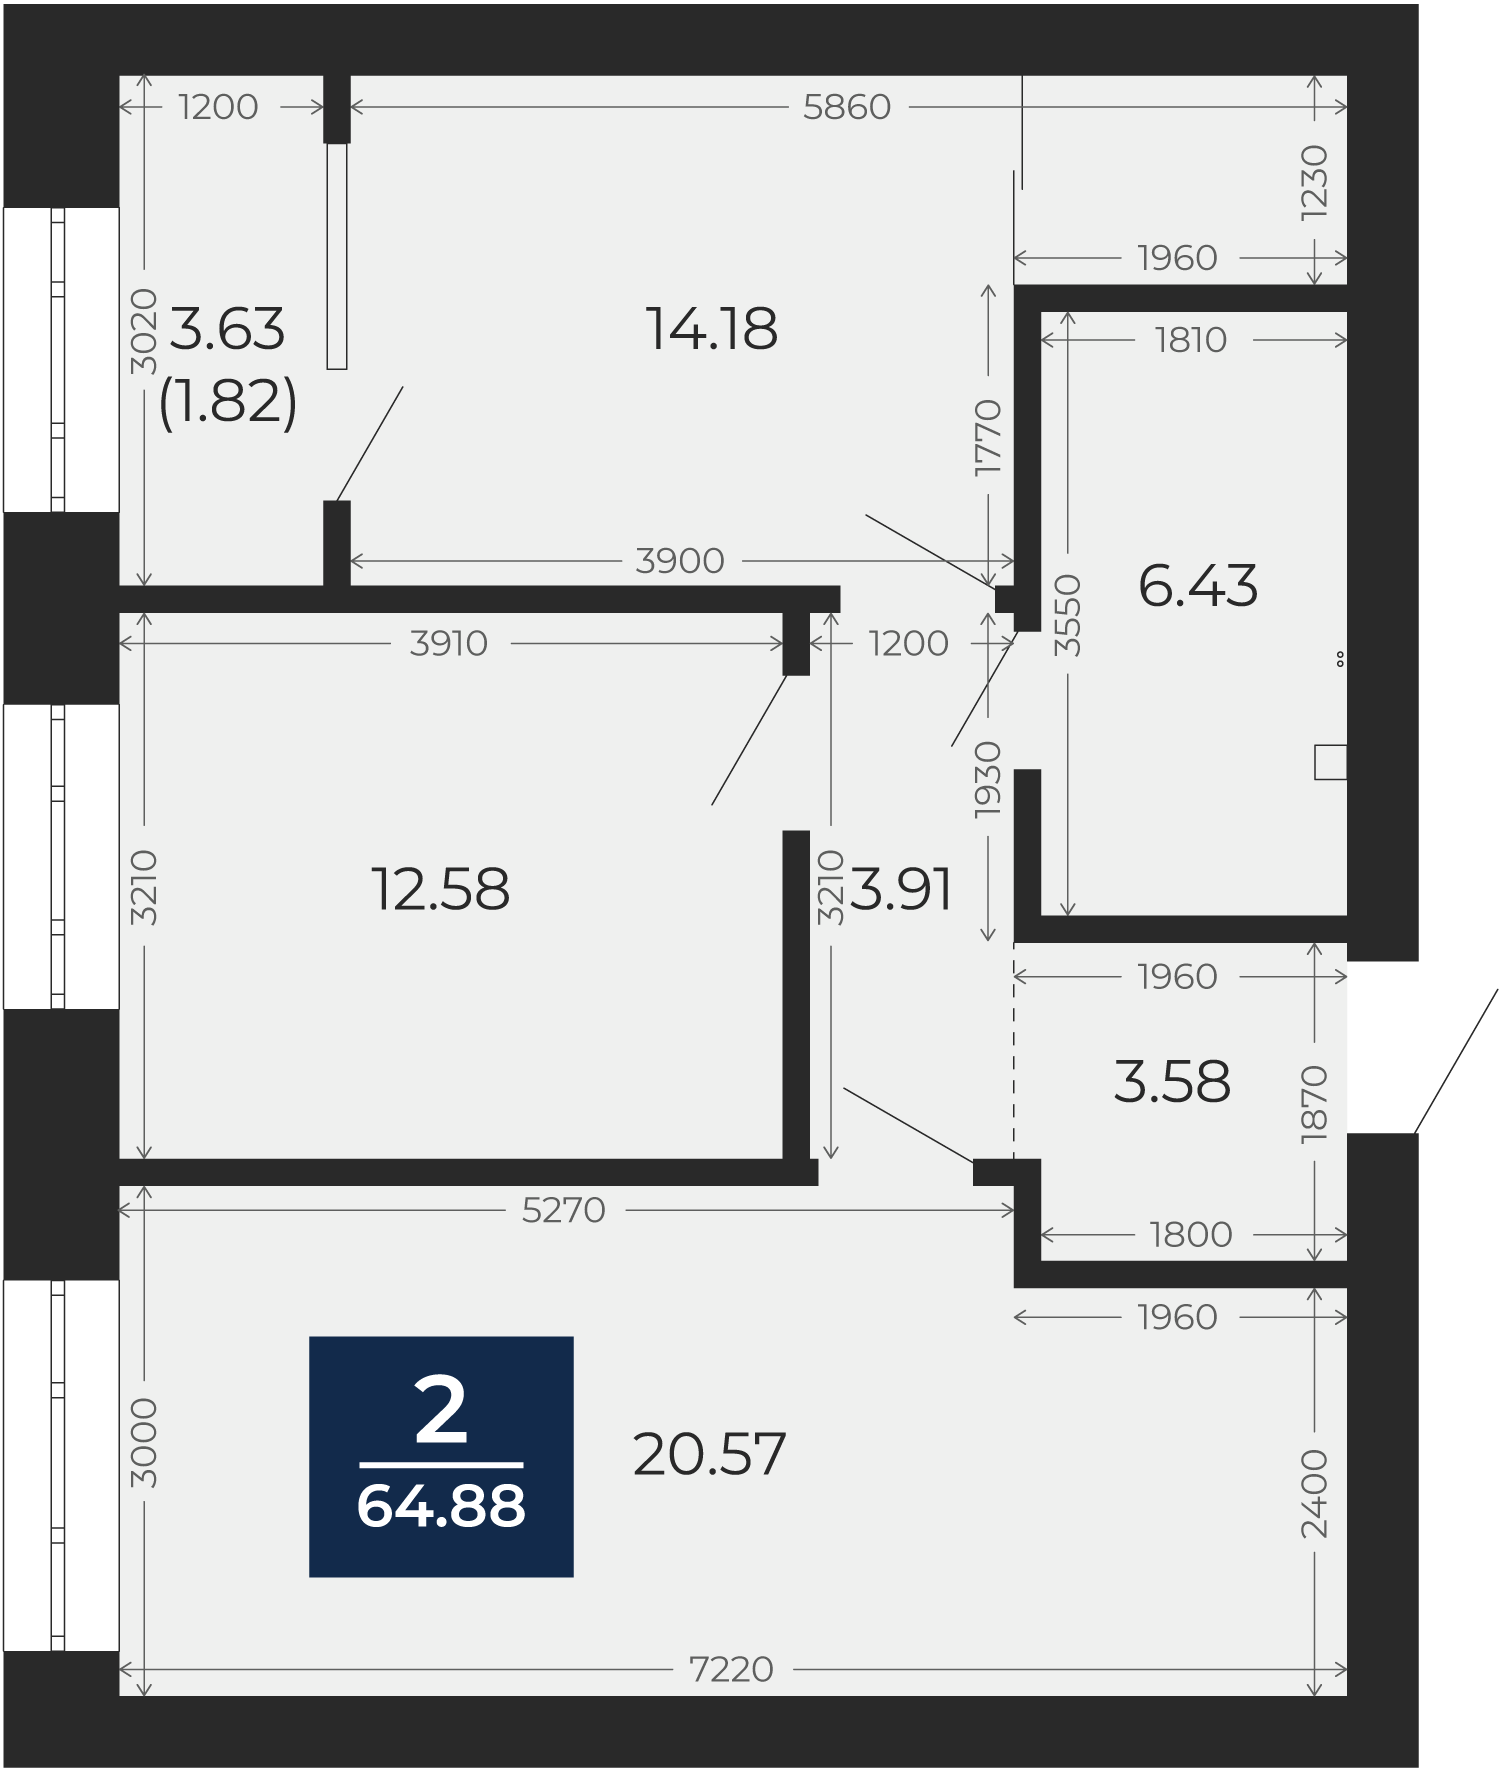 Квартира № 59, 2-комнатная, 64.88 кв. м, 3 этаж